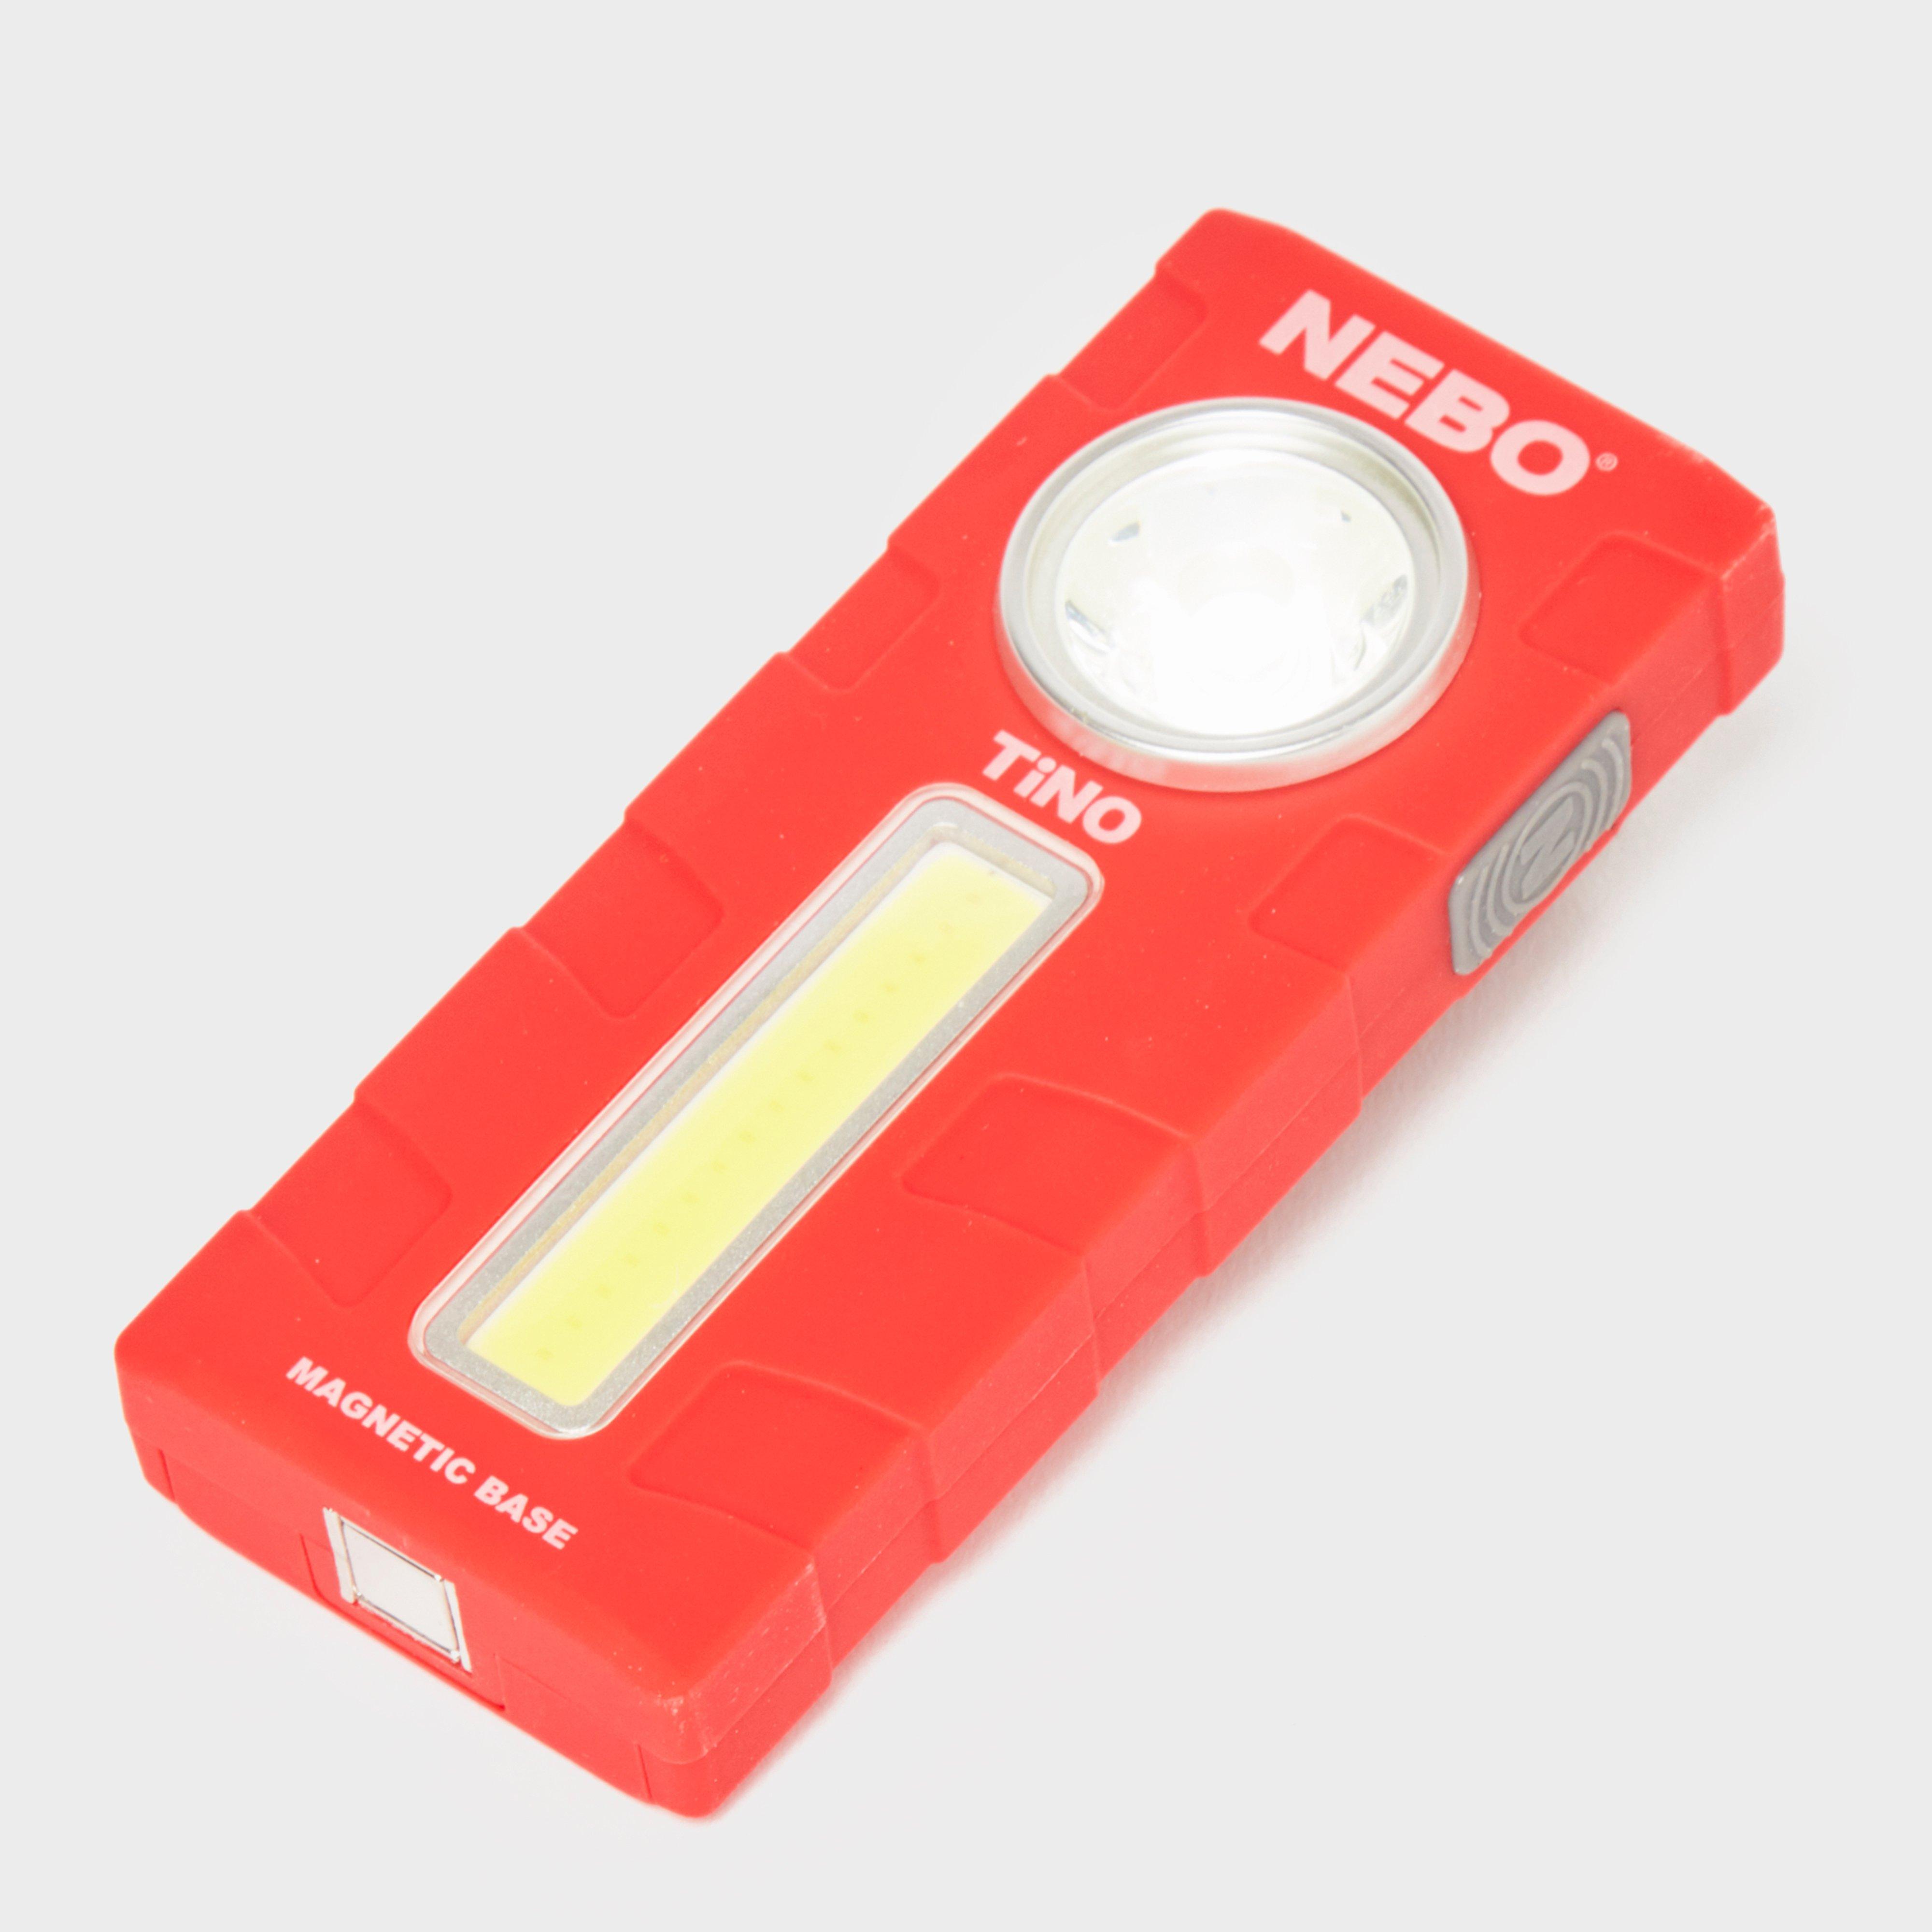 Nebo TiNO Light Review